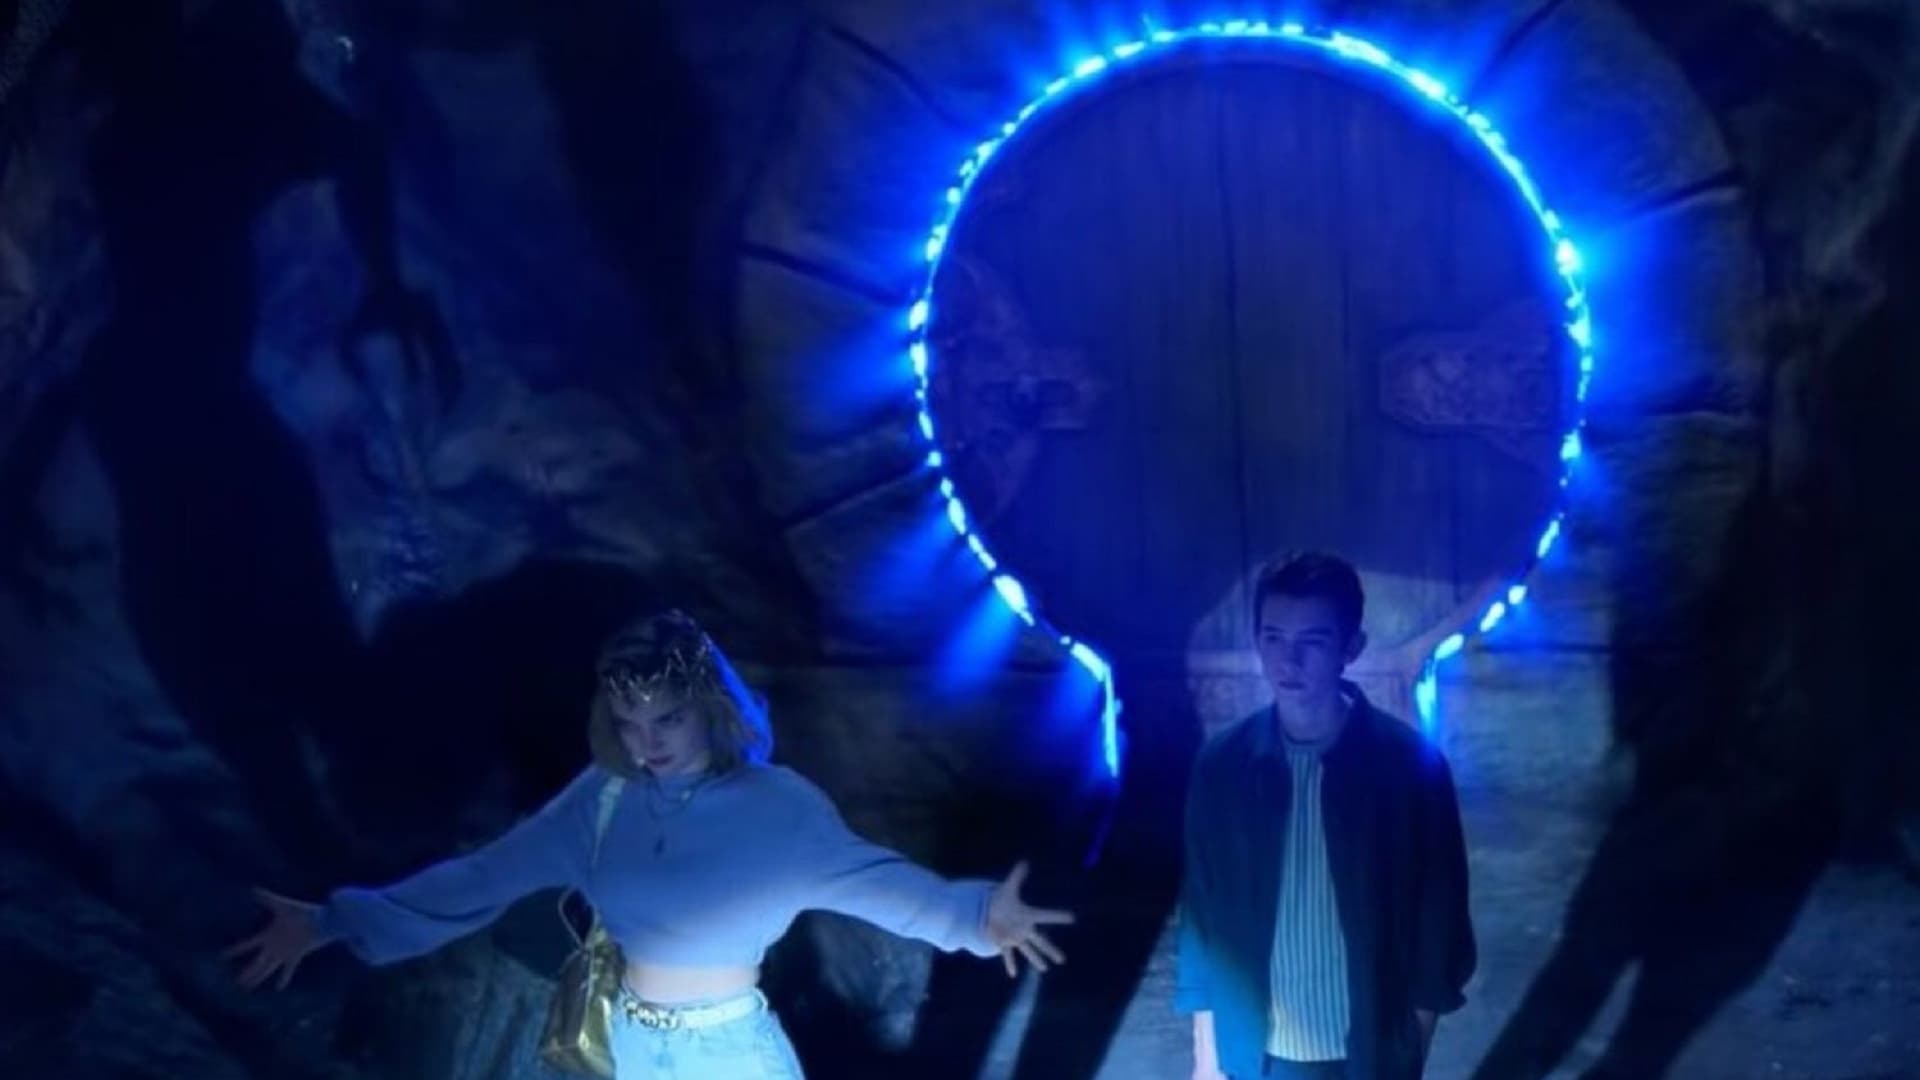 La serie de misterio Locke & Key estrenó la temporada 2 en Netflix